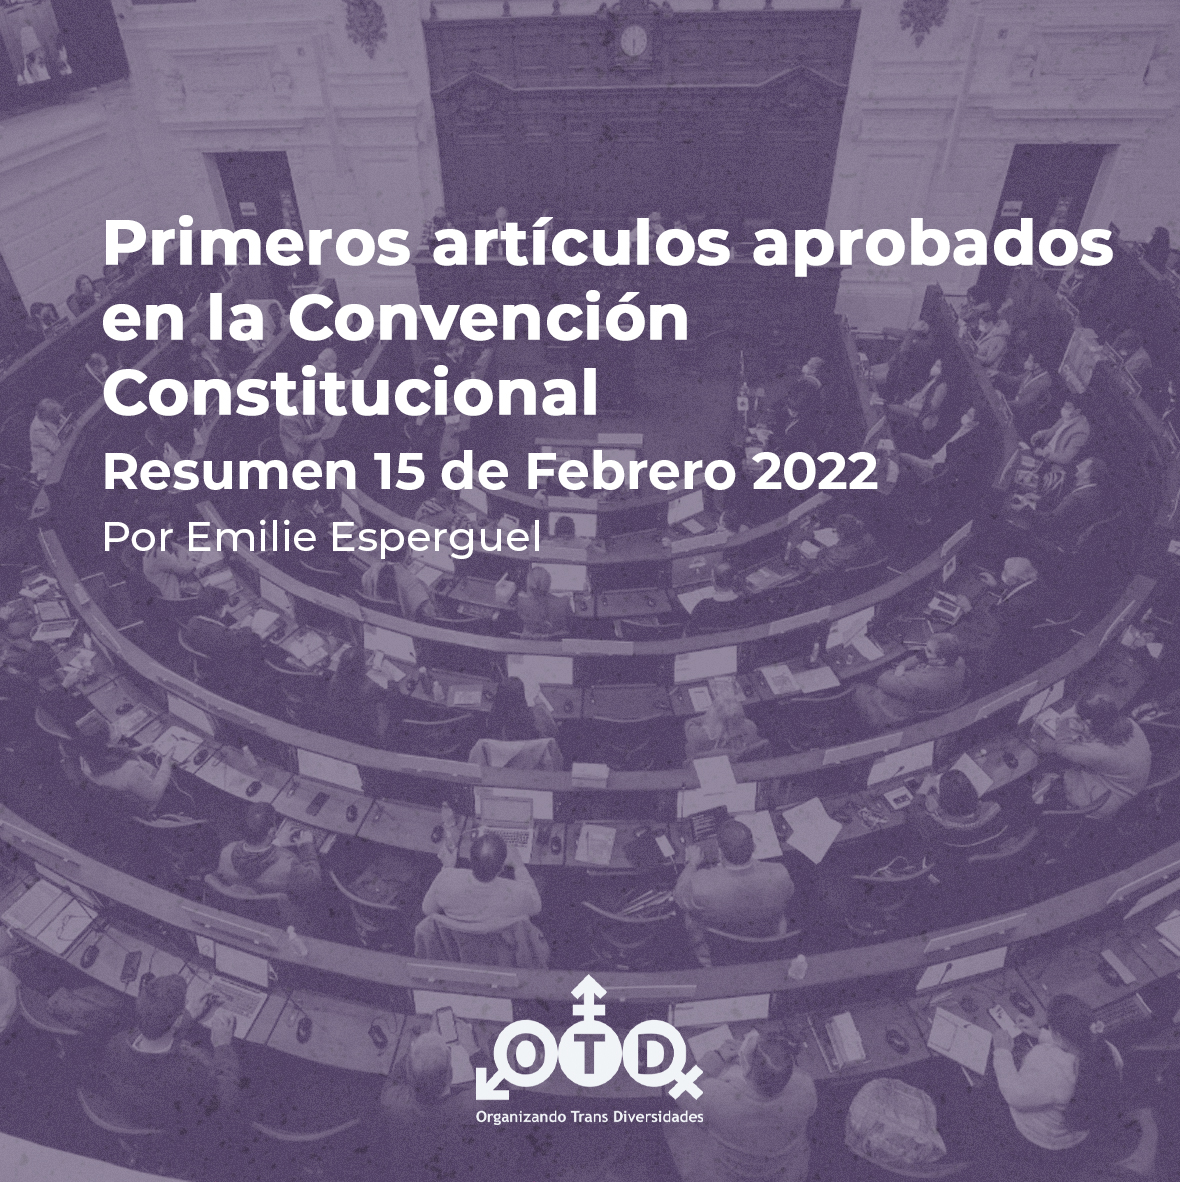 Primeros artículos aprobados en la Convención Constitucional por Emilie Esperguel